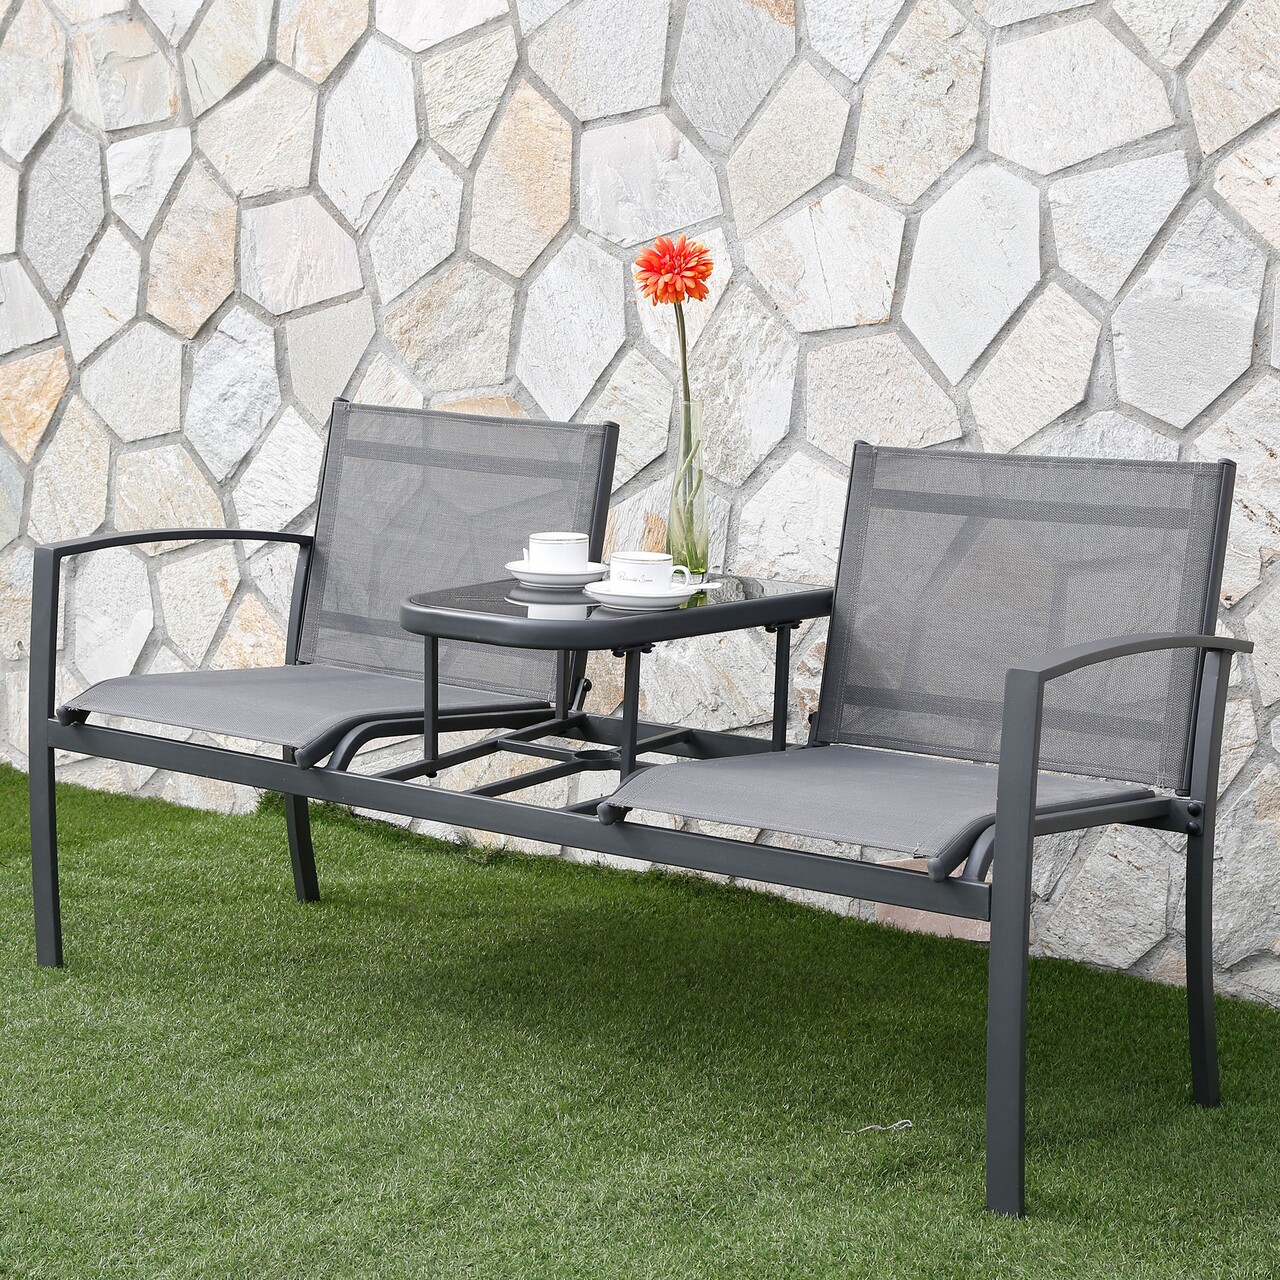 Maison argos kerti terasz/bútor szett, kanapé + asztalka,  l.145.5 l.61.5 h.74.5 cm, acél, szürke